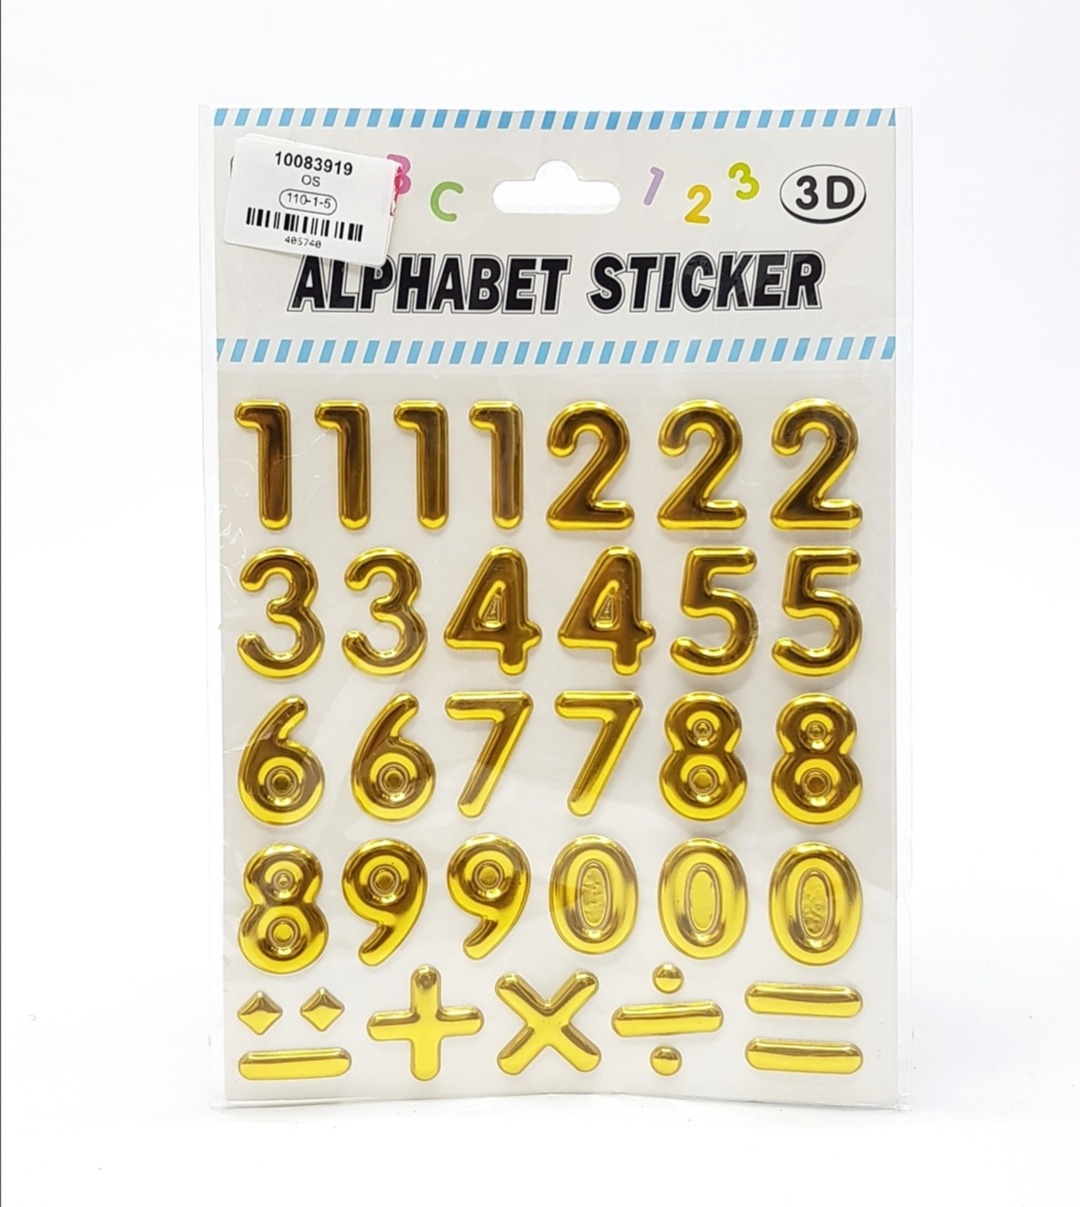 Alphabet Sticker